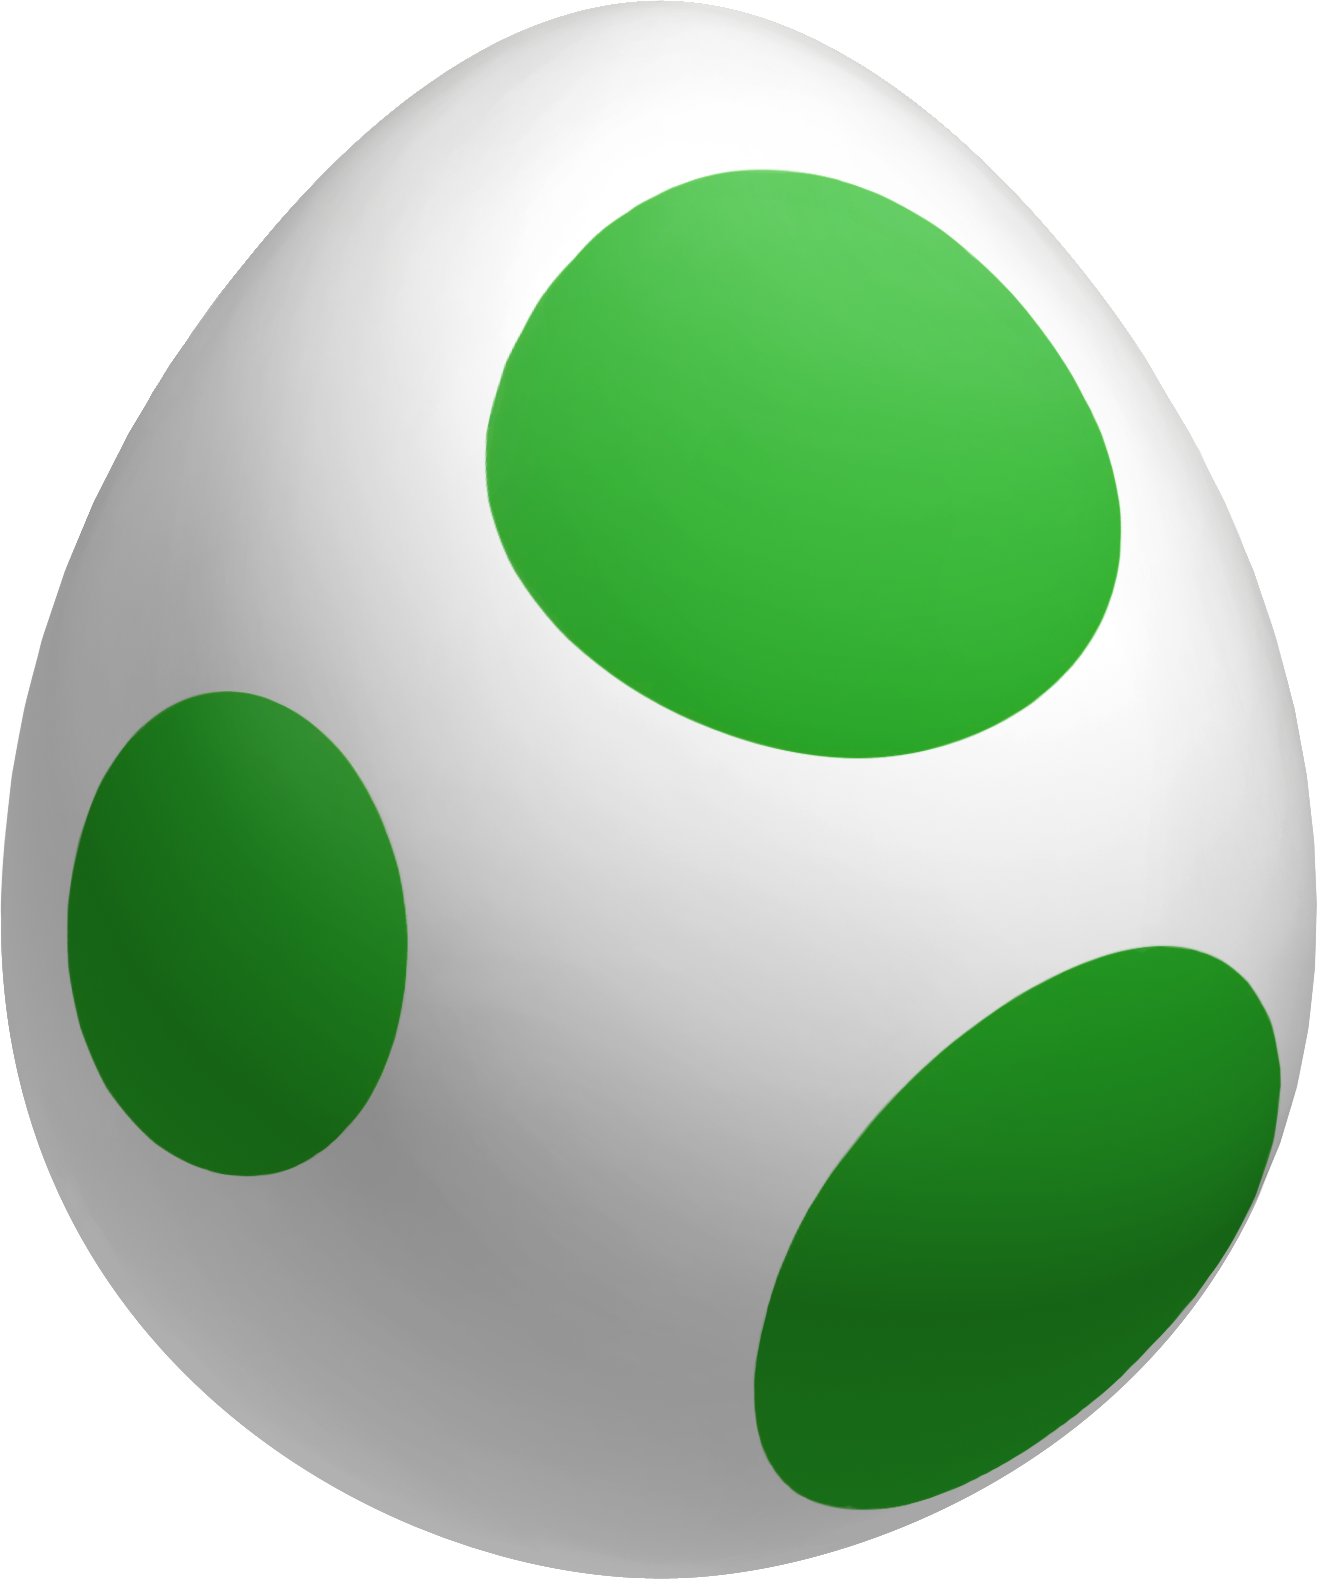 हरा-धब्बेदार अंडा